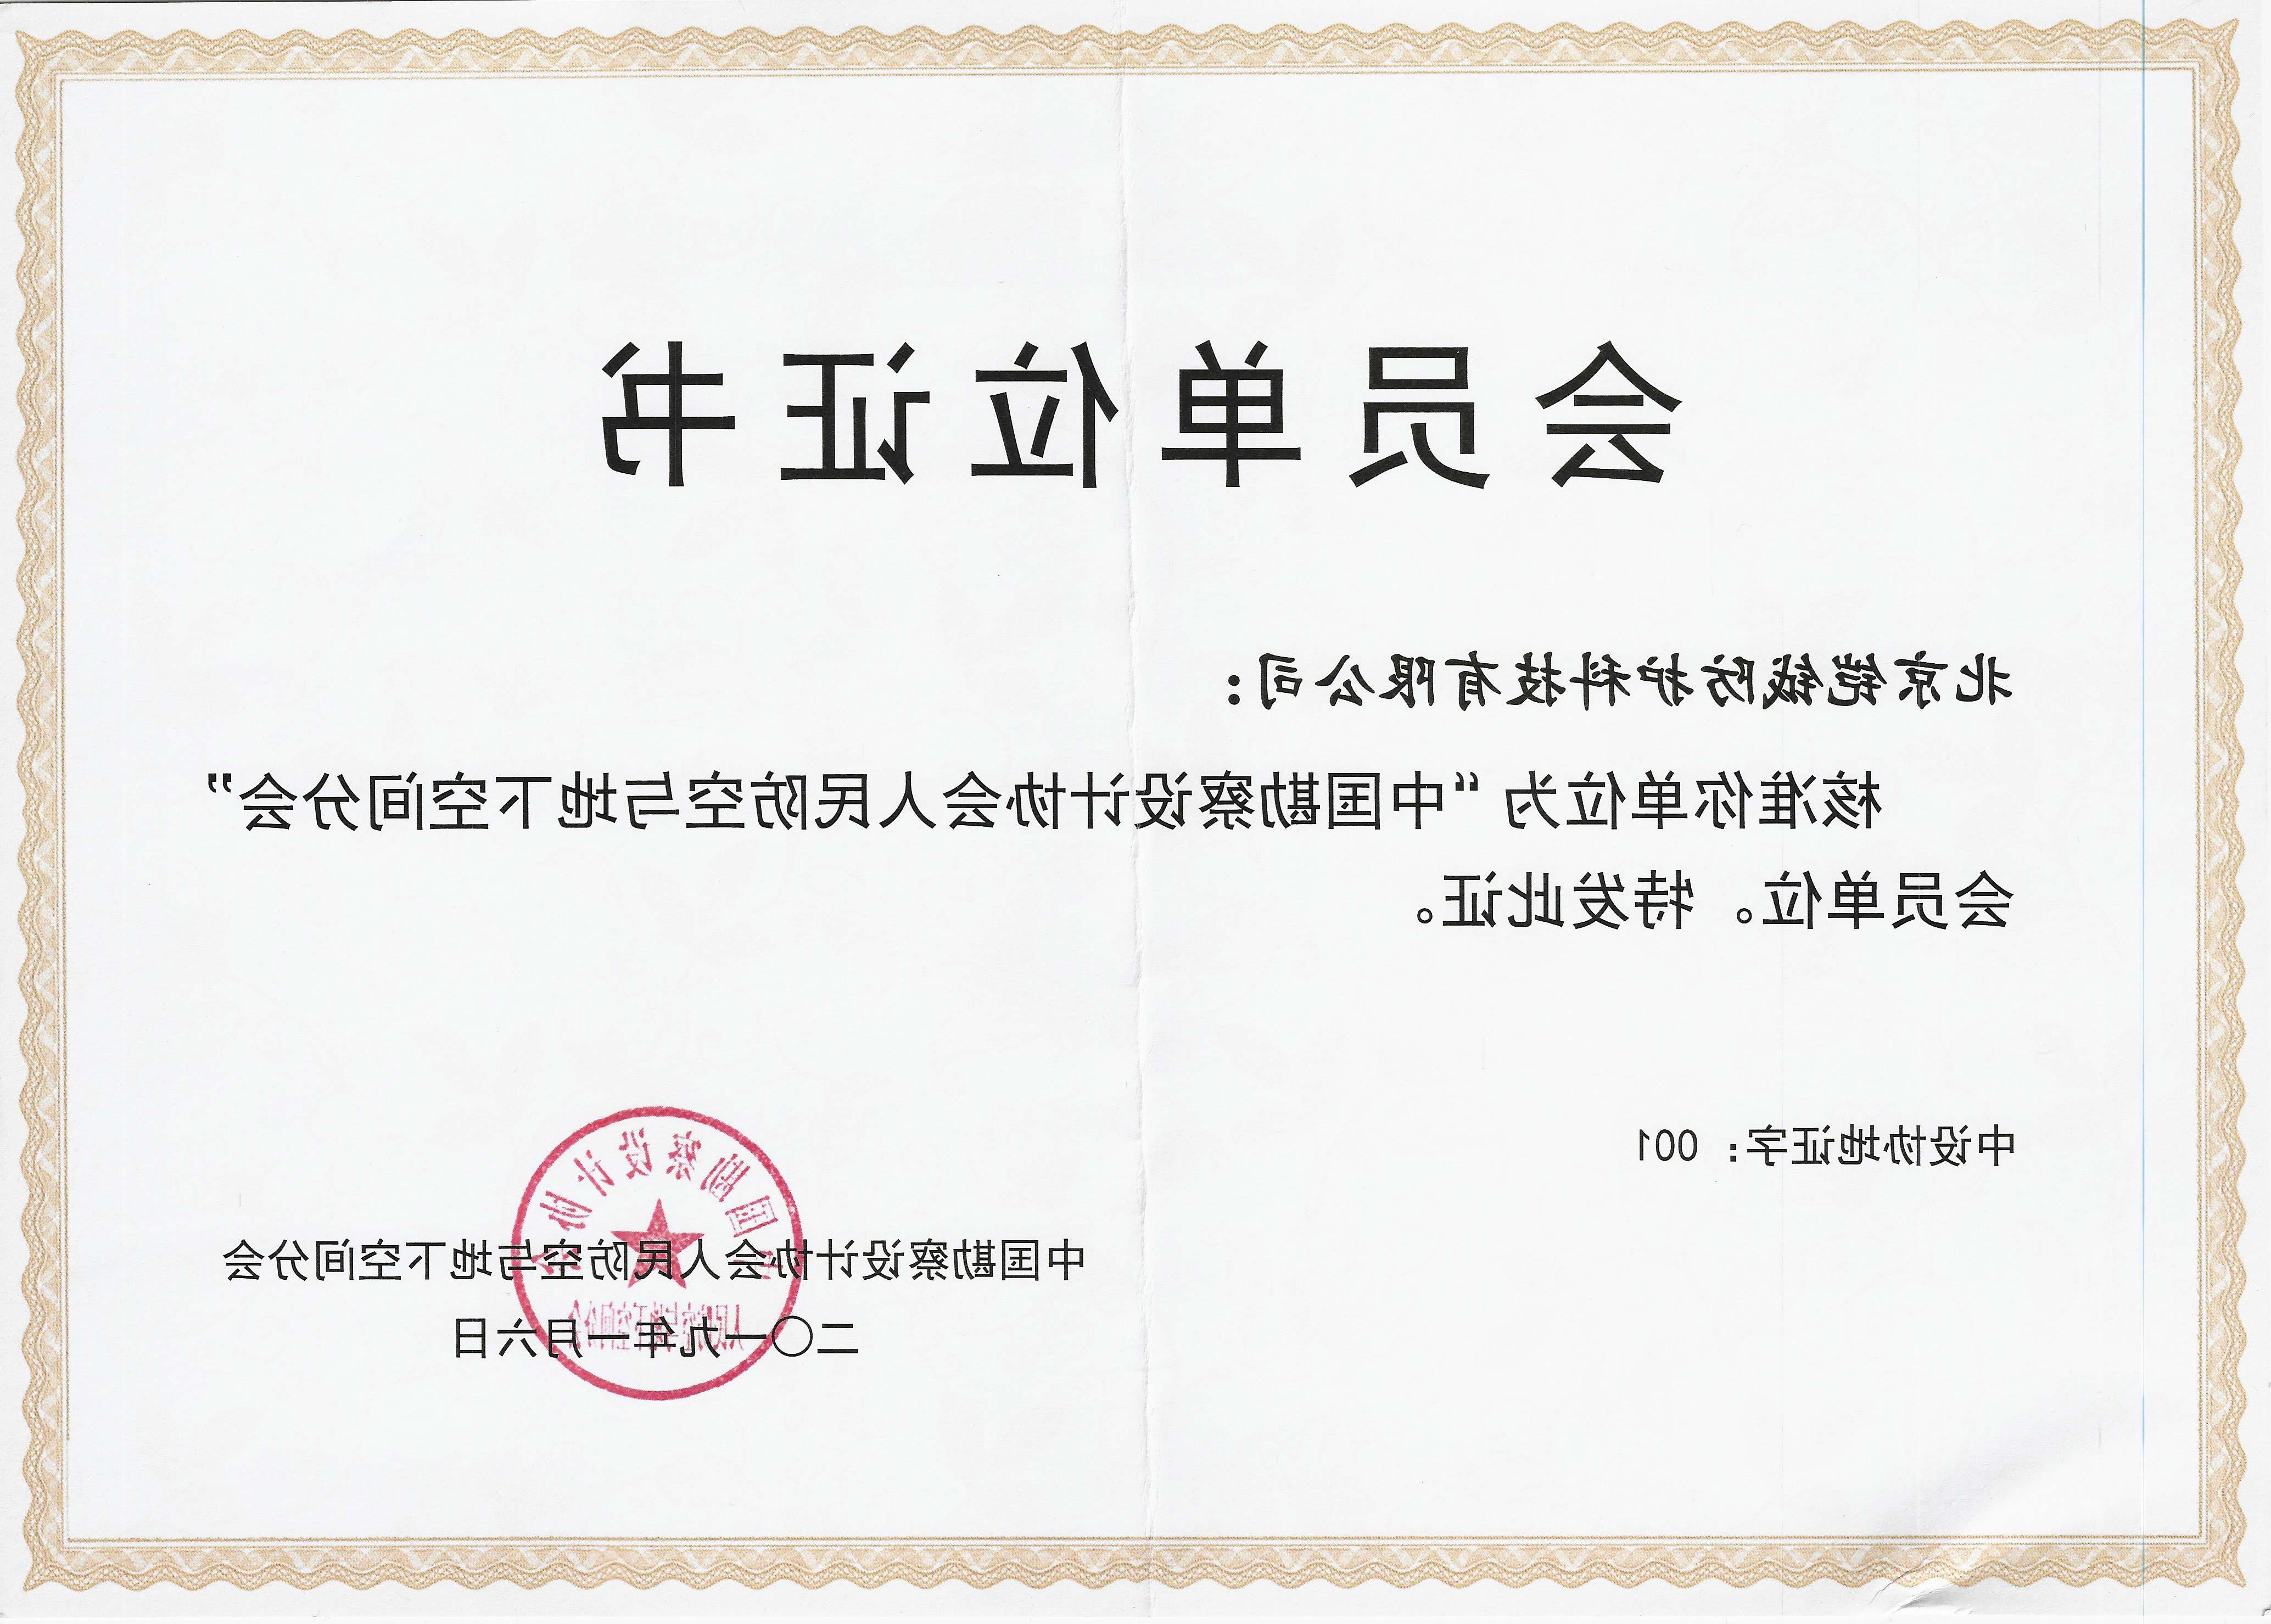 中国勘察设计协会人民防空与地下空间分会会员单位证书